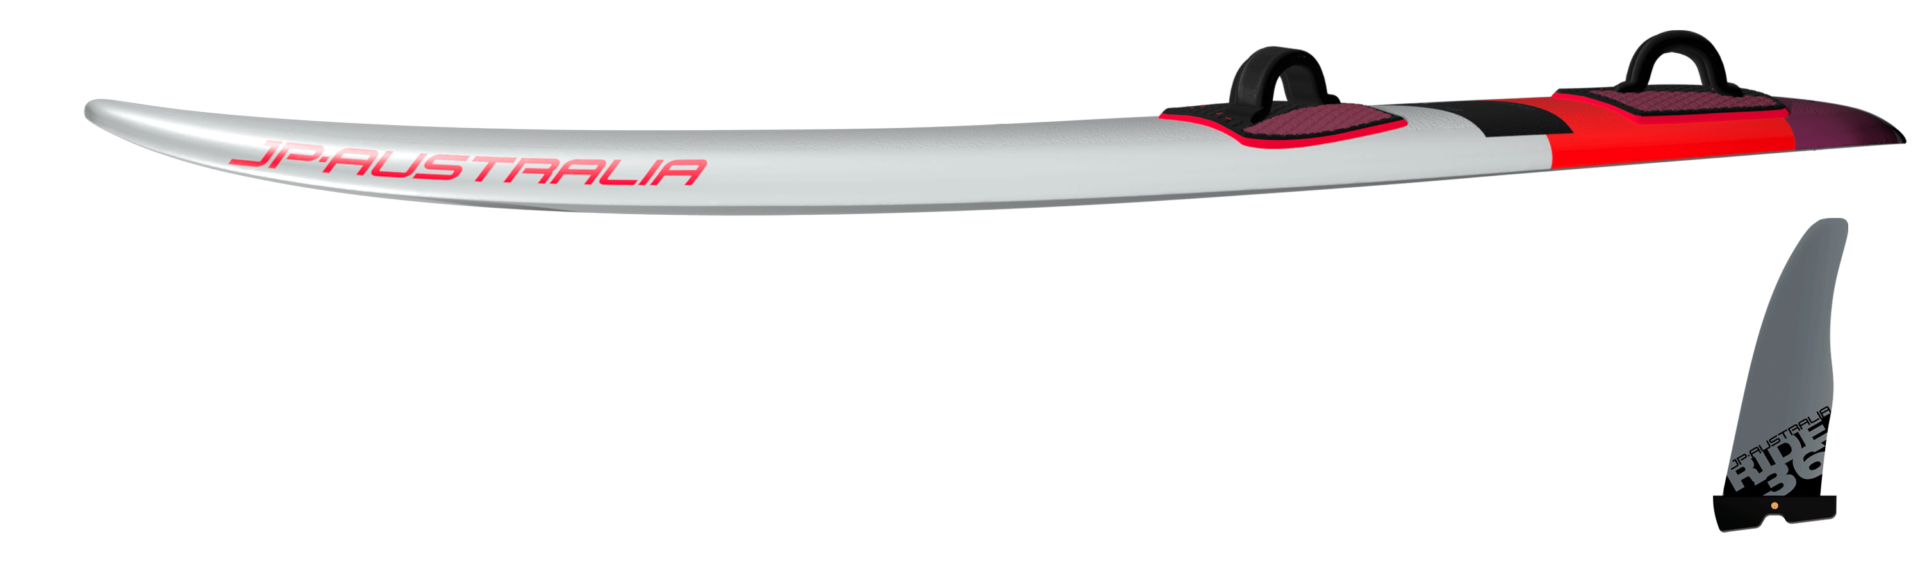 profil magic ride es jp australia 2020 windsurfing karlin